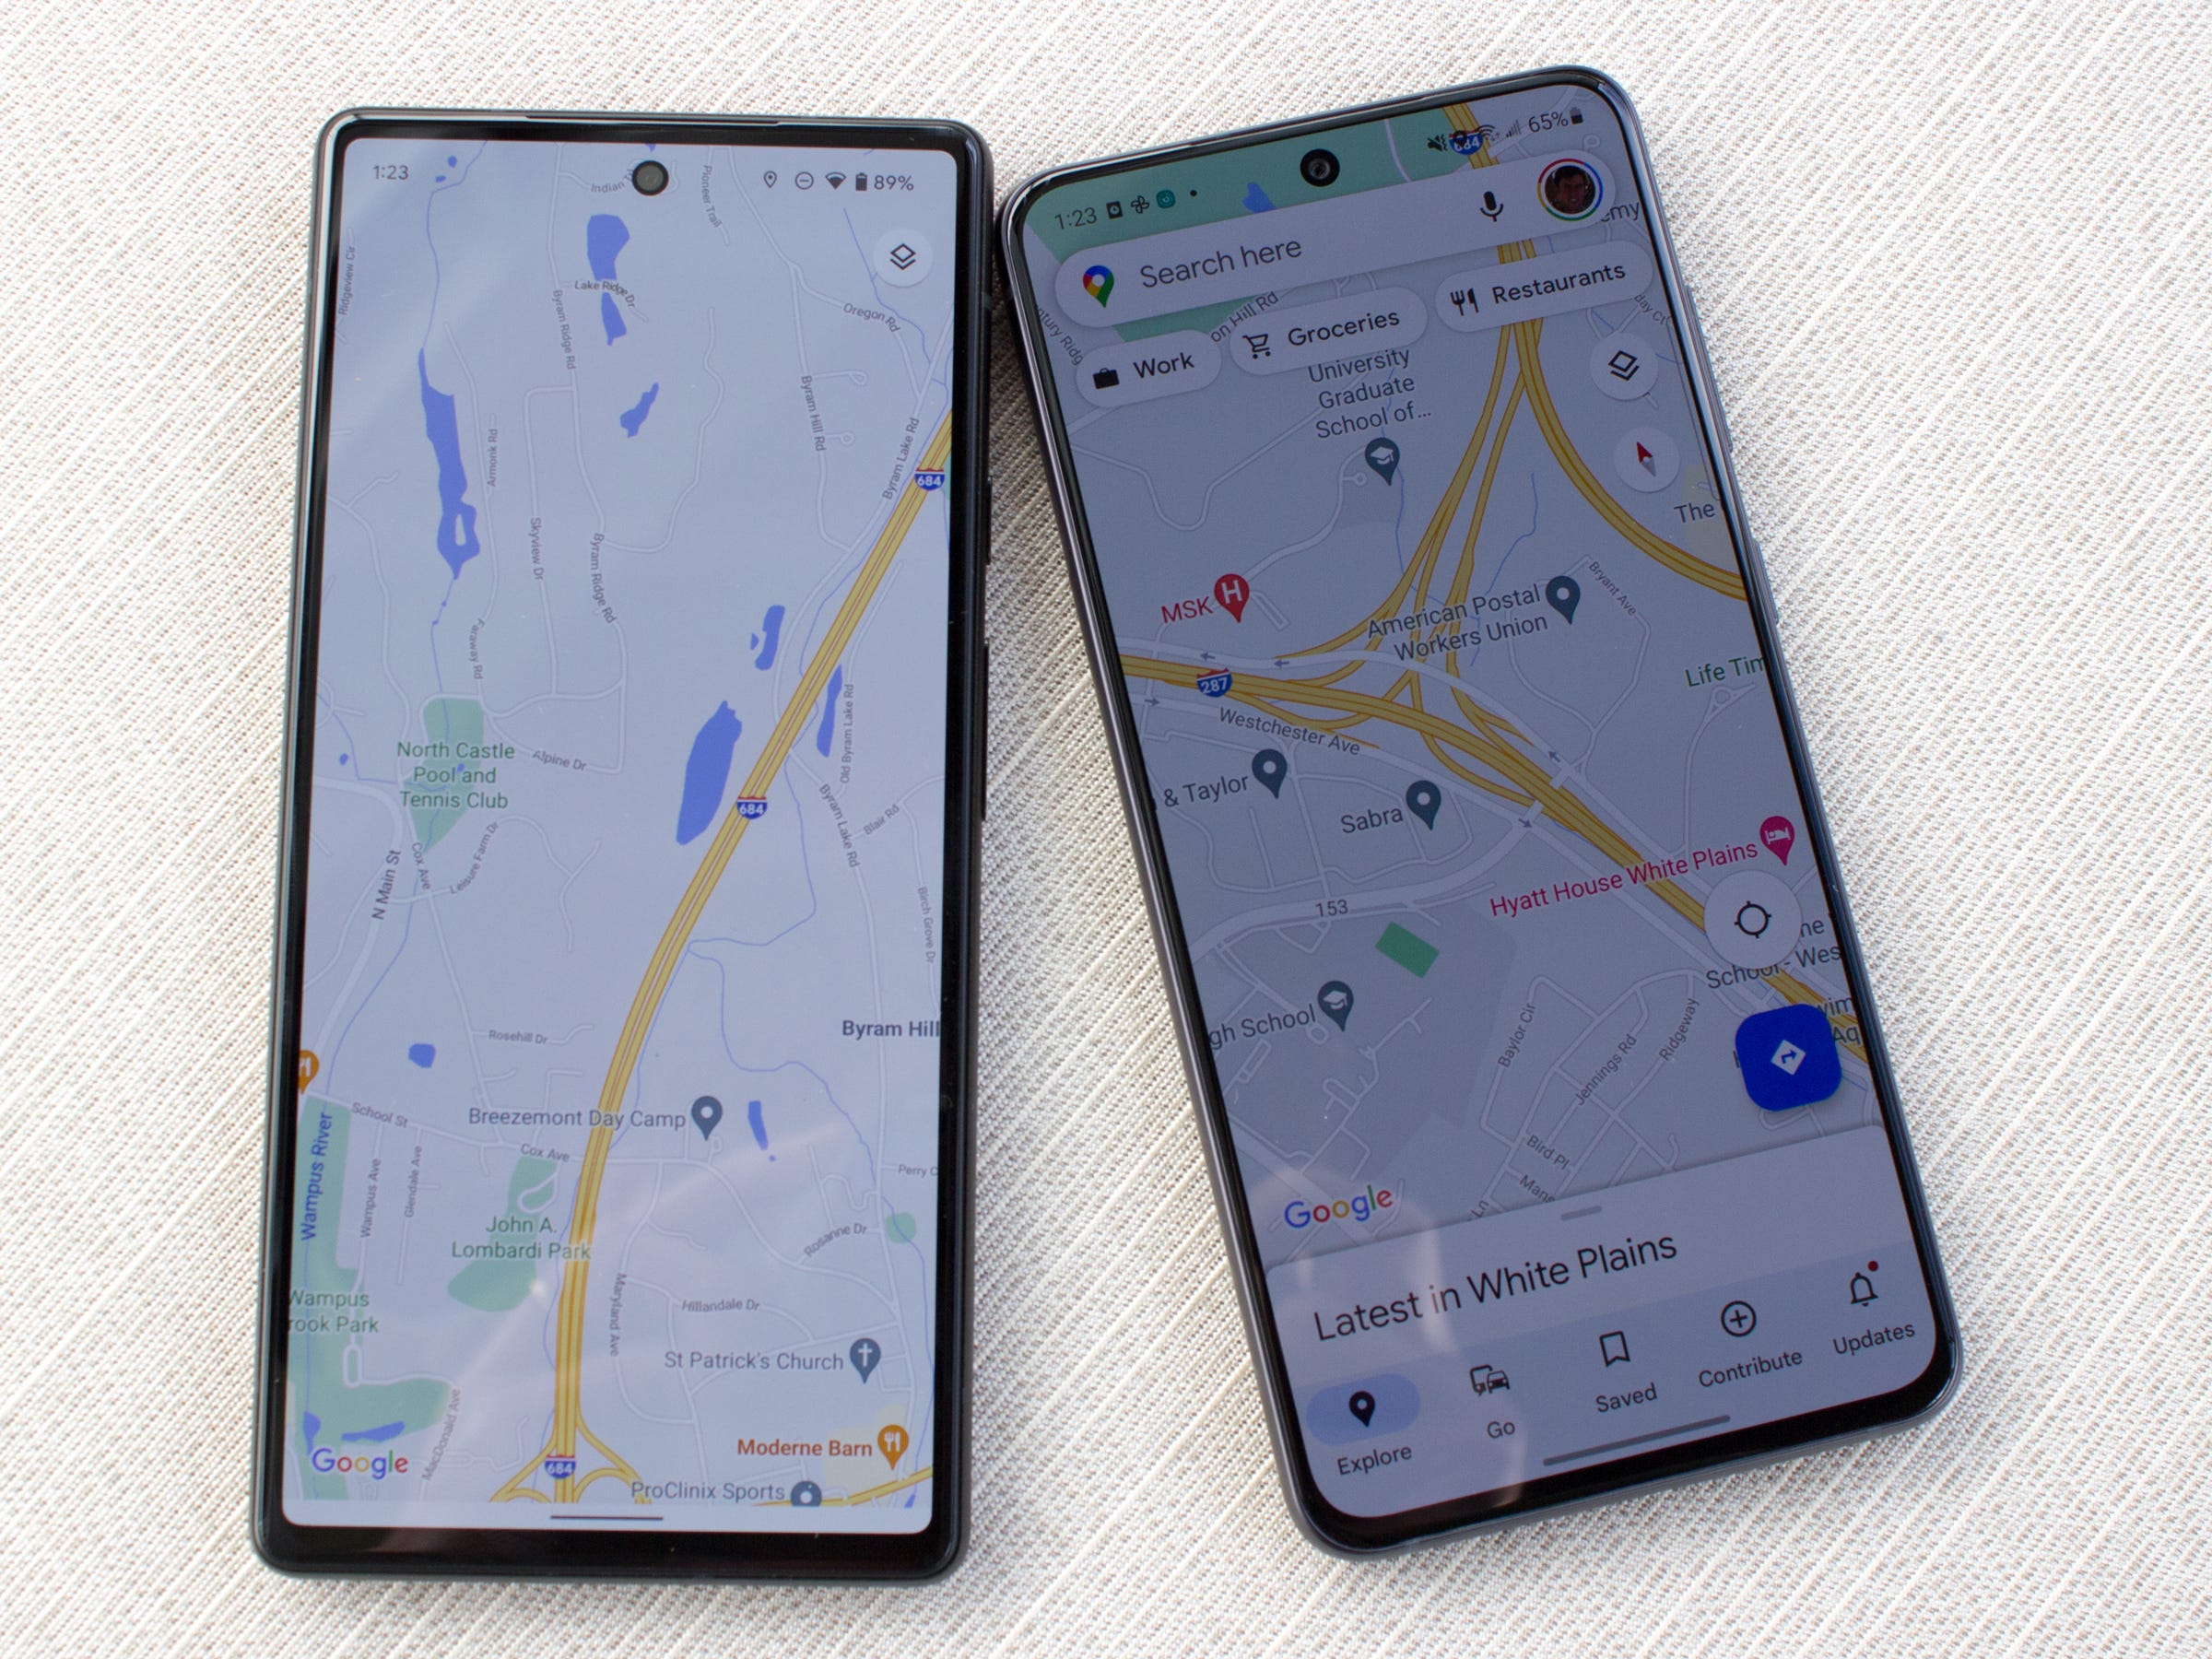 Die Bildschirme von Pixel 6 und Galaxy S21 FE nebeneinander, auf denen Google Maps ausgeführt wird, zeigen, dass das Pixel 6 einen helleren Bildschirm hat.